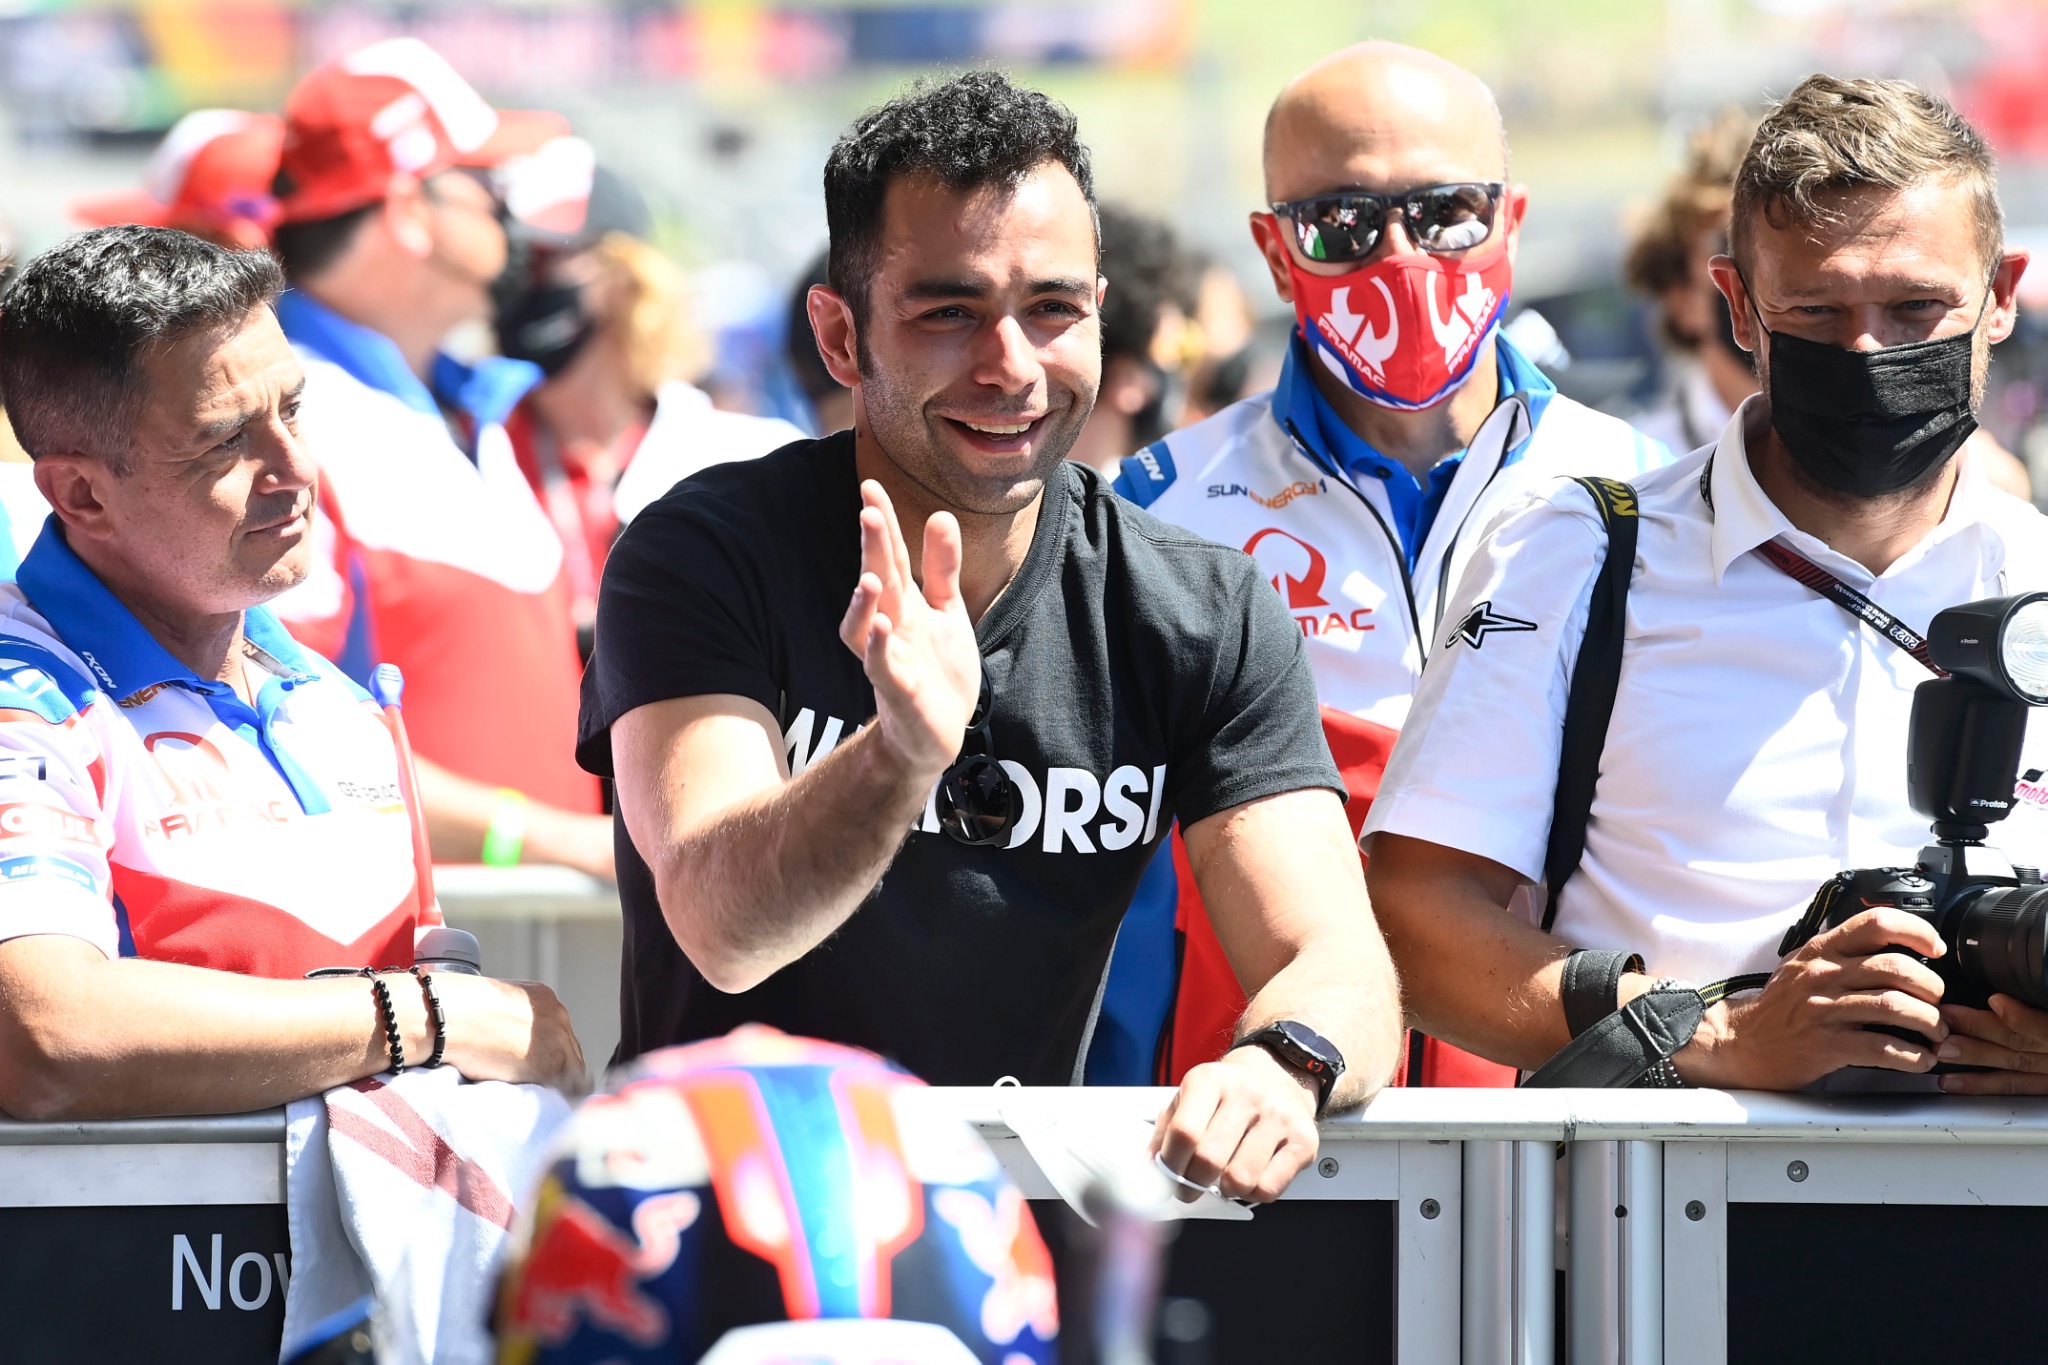 Danilo Petrucci, Grand Prix of the Americas, 9 April